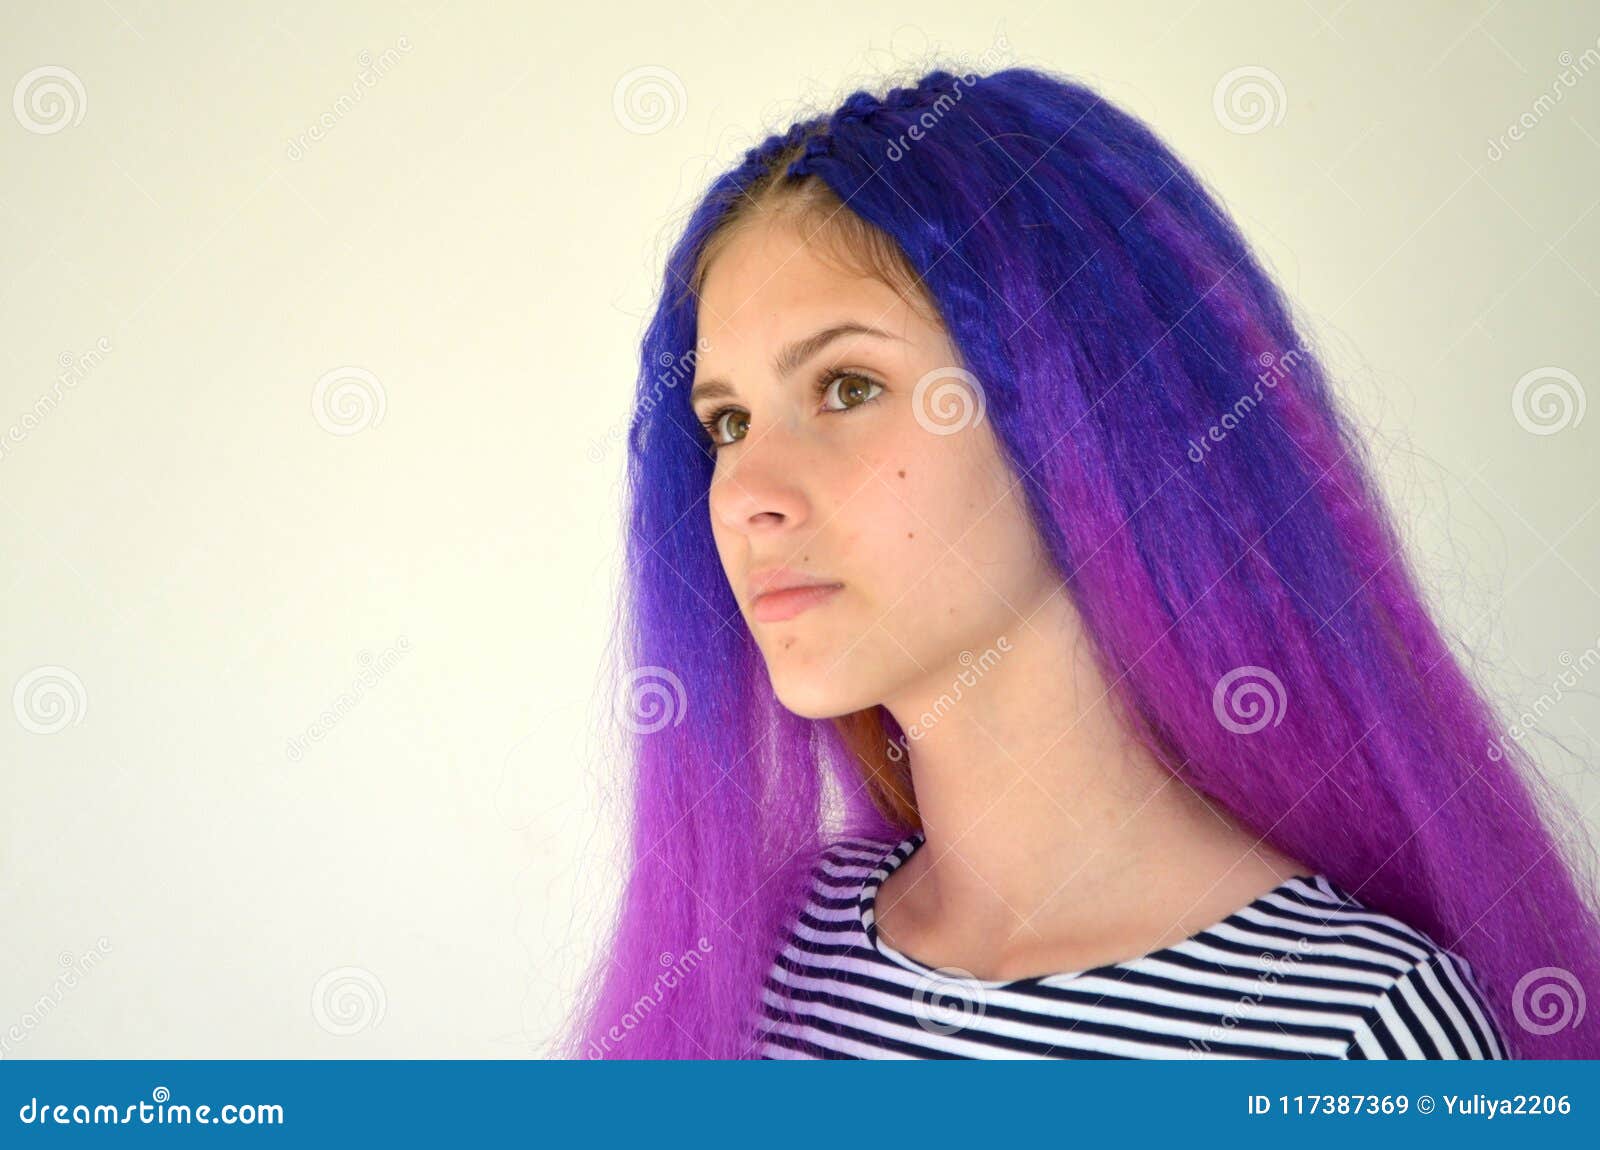 blue purple hair korean